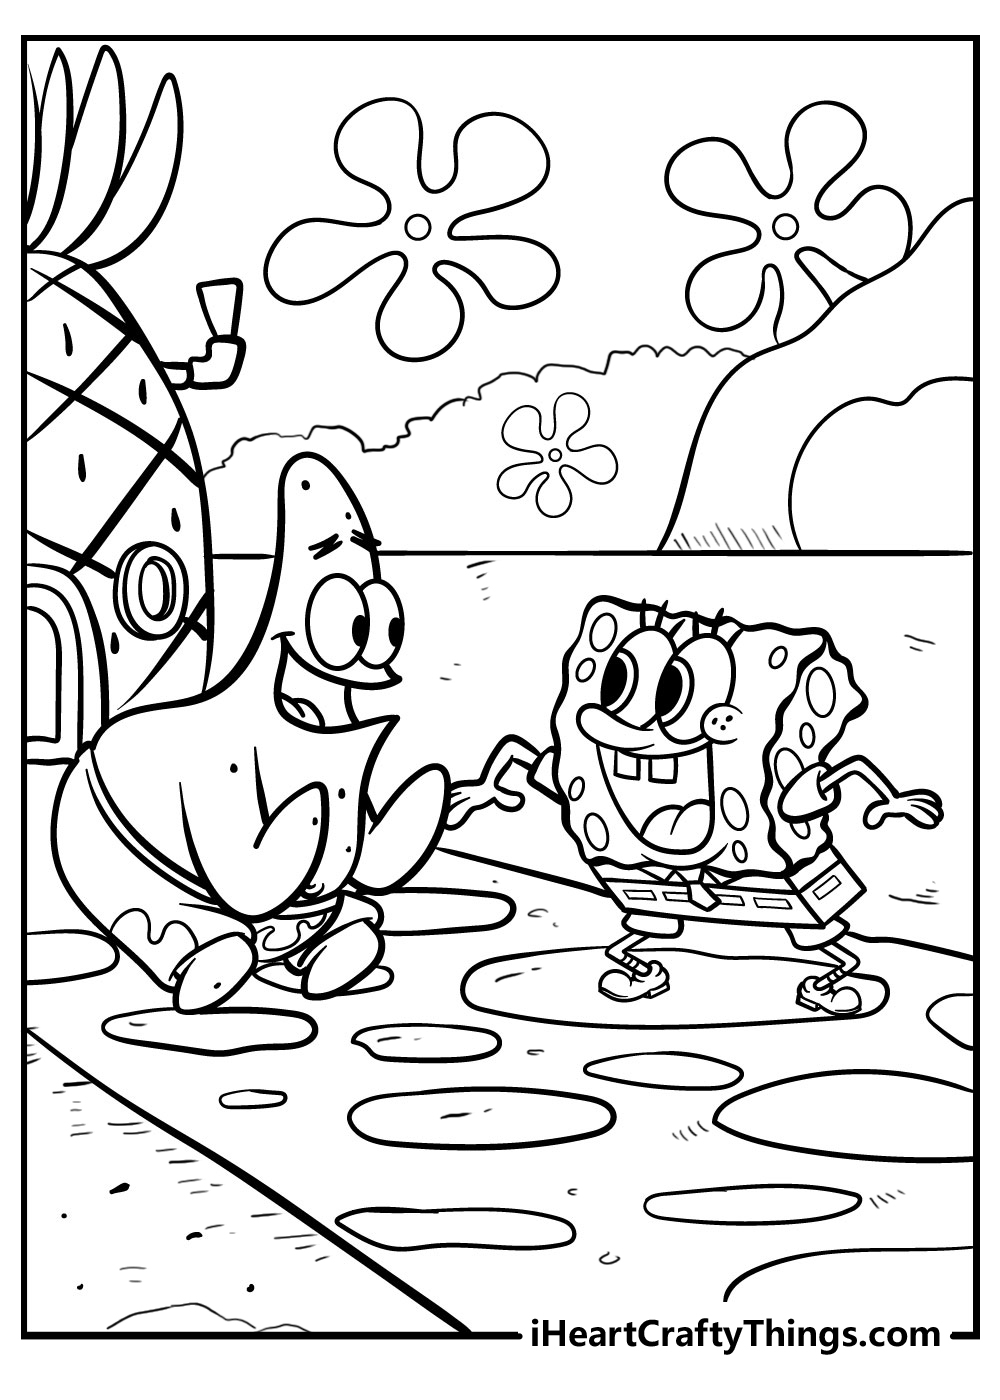 Spongebob Kleurplaten Gratis Printen Voor Kinderen Images